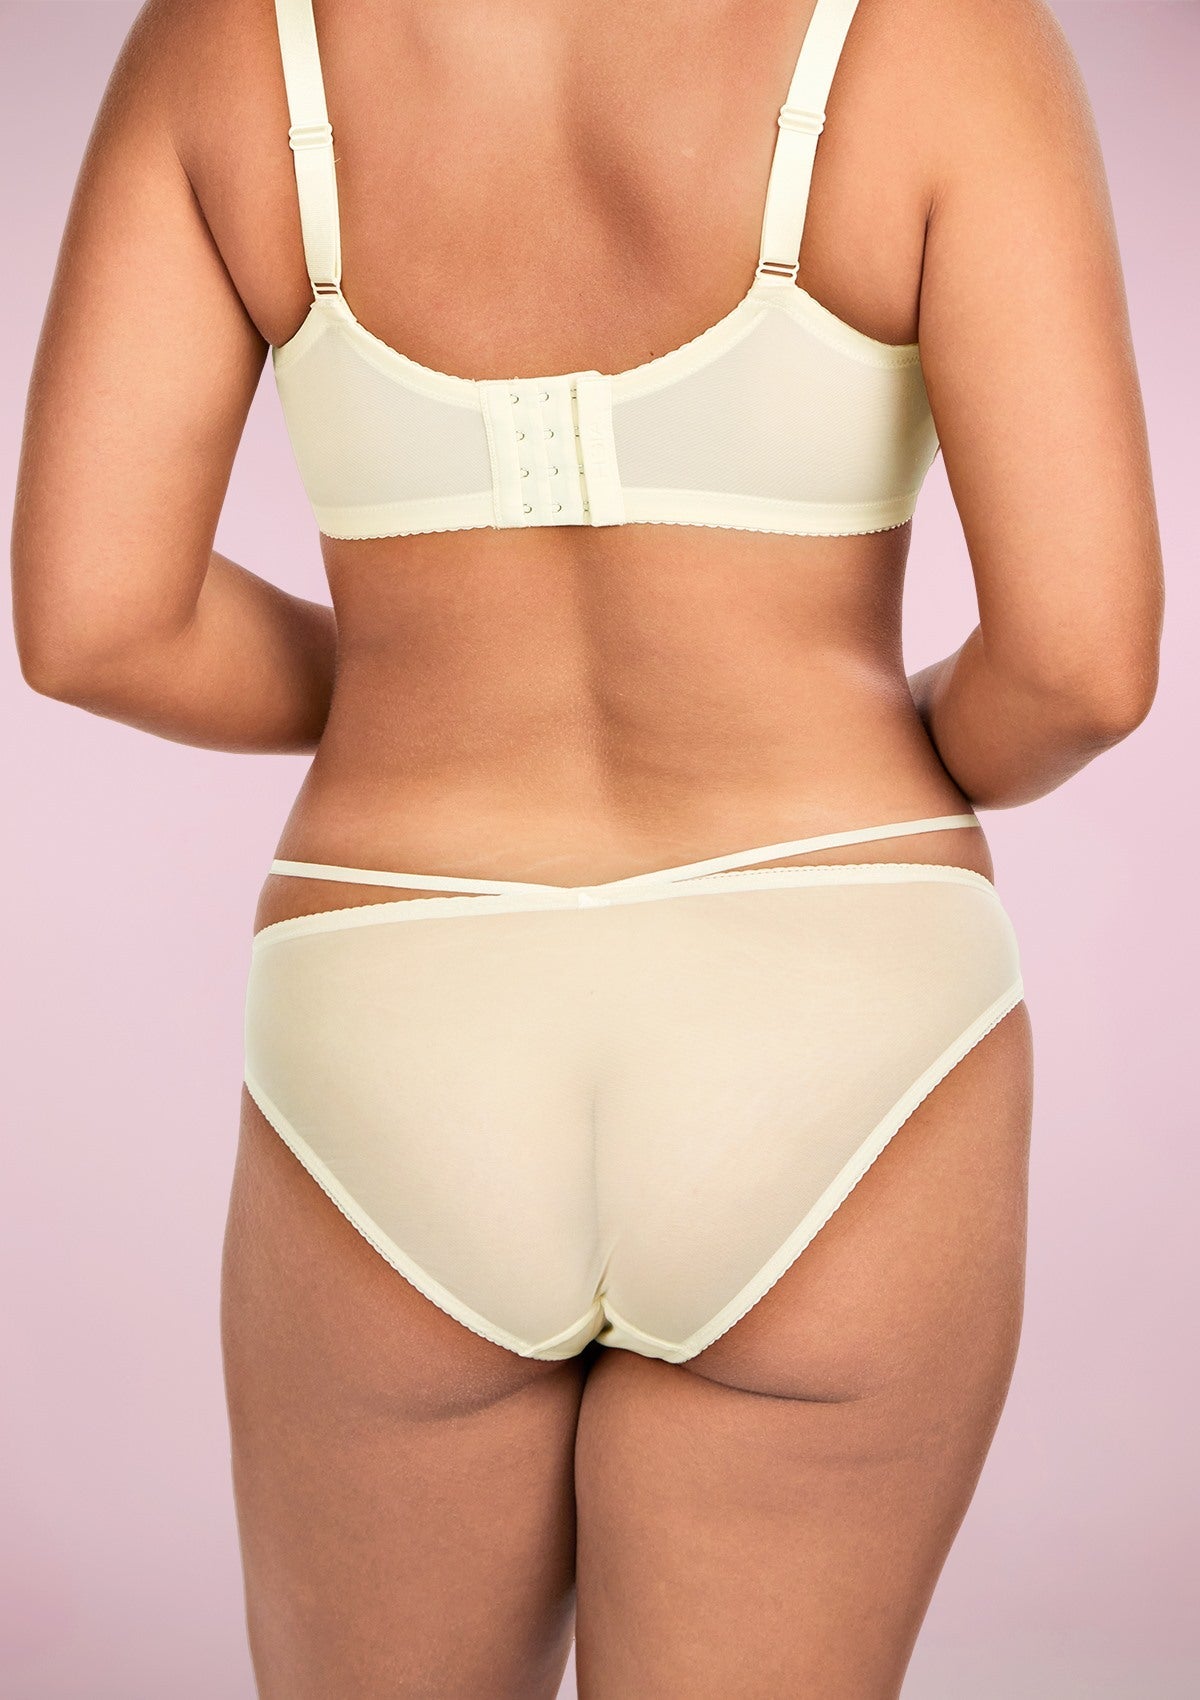 HSIA Breathable Sexy Feminine Lace Mesh Bikini Underwear - L / Champagne